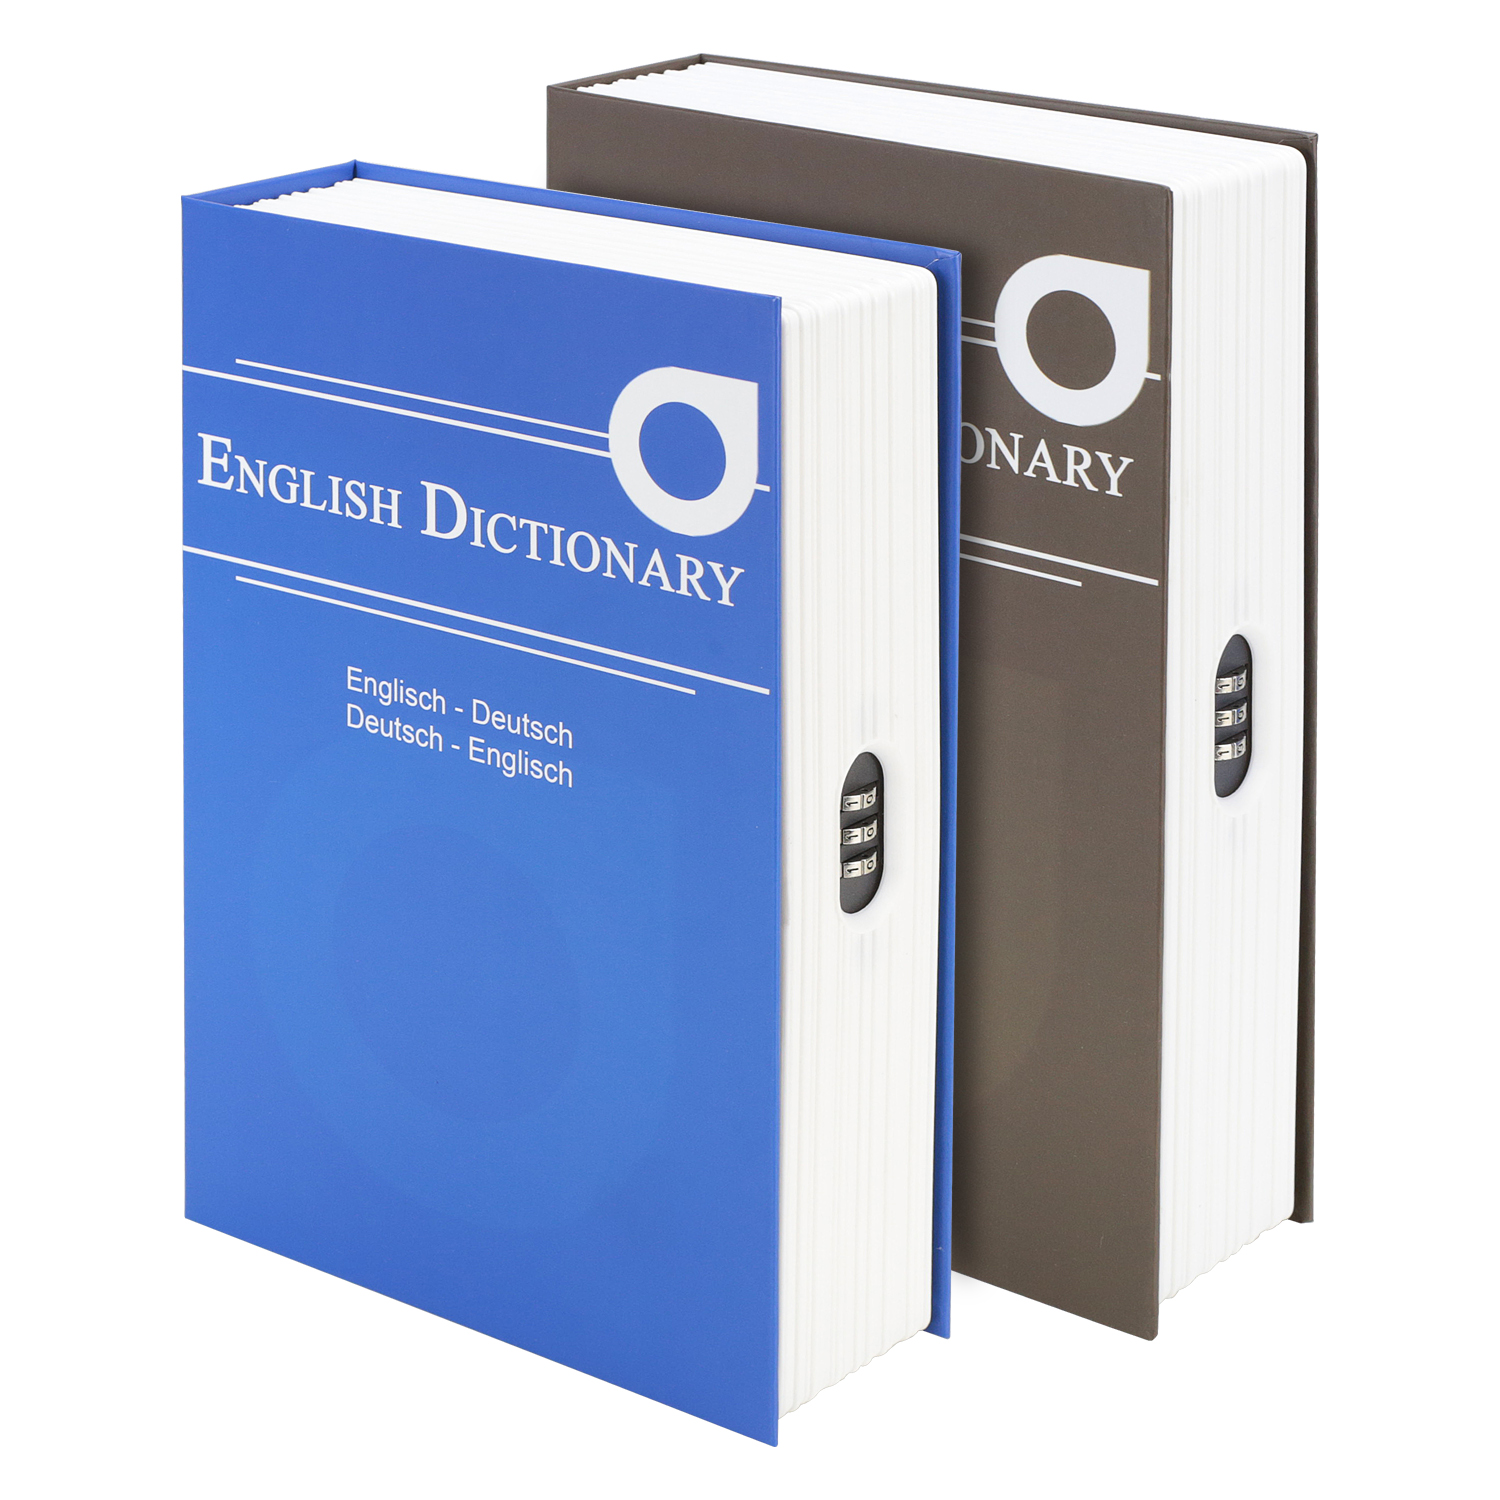 Buchtresor English Dictionary mit Zahlenschloss von HMF mit 23,5 cm Breite in Blau